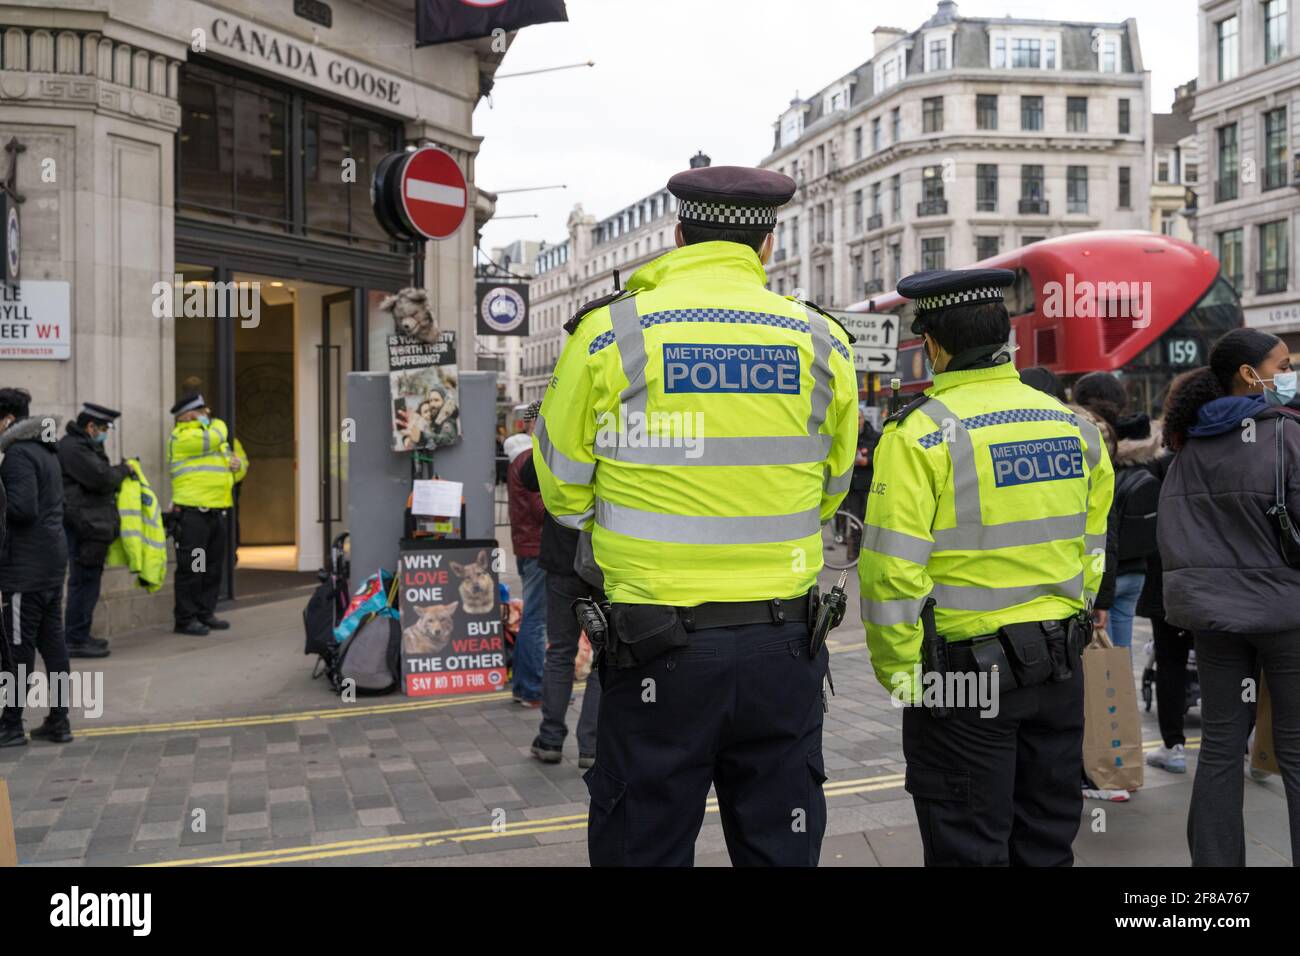 Londres, 12th de abril de 2021: La policía responde a los activistas de Peta protestando frente a una tienda 'Canada Goose' contra la crueldad animal en Regent Street, Reino Unido Foto de stock